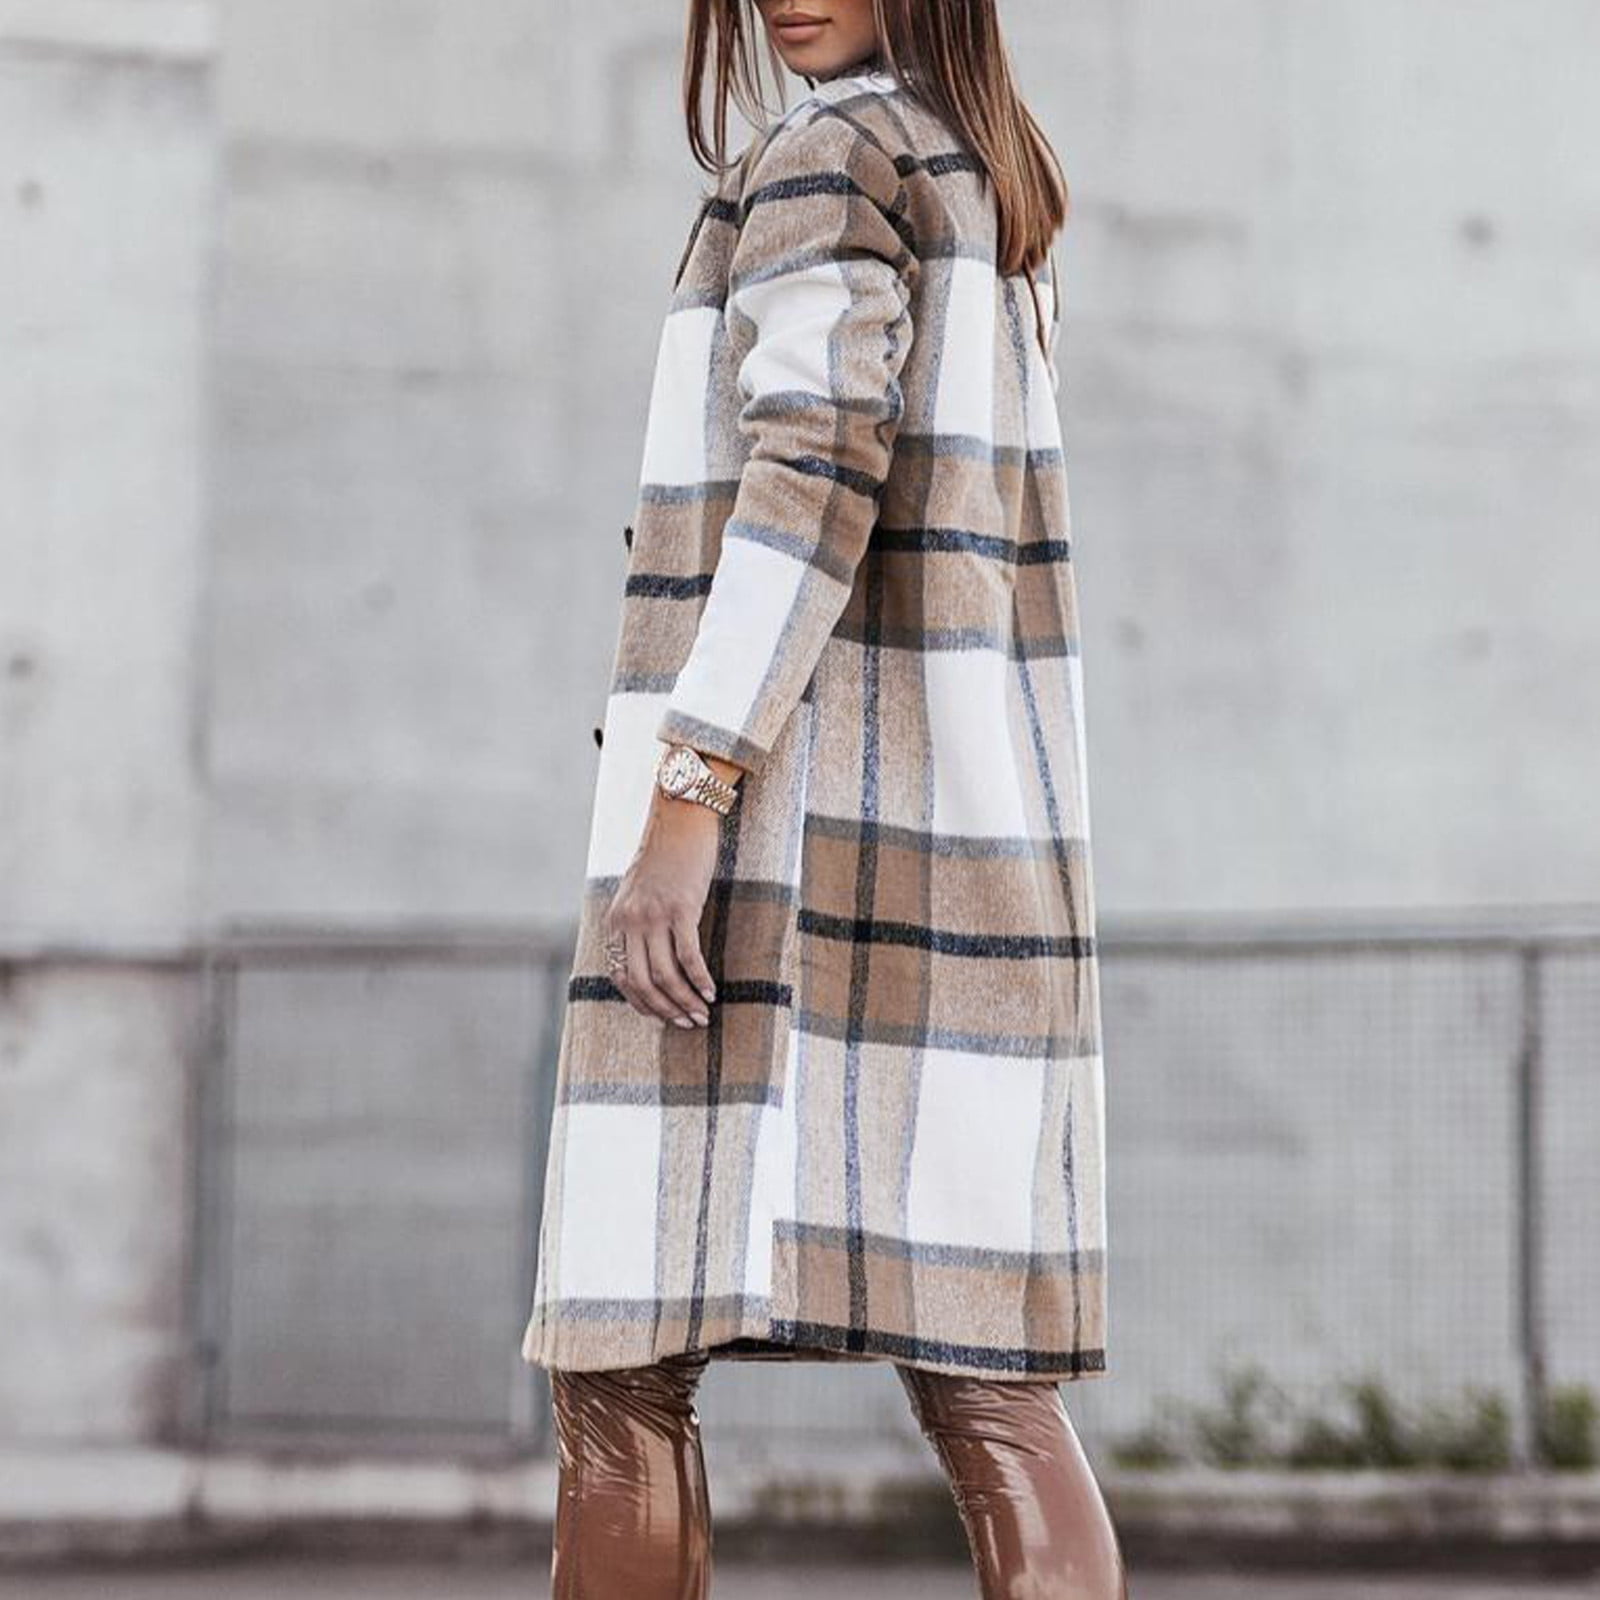 YUEHAO Coats For Women Women's Autumn And Winter Fashion Lattice